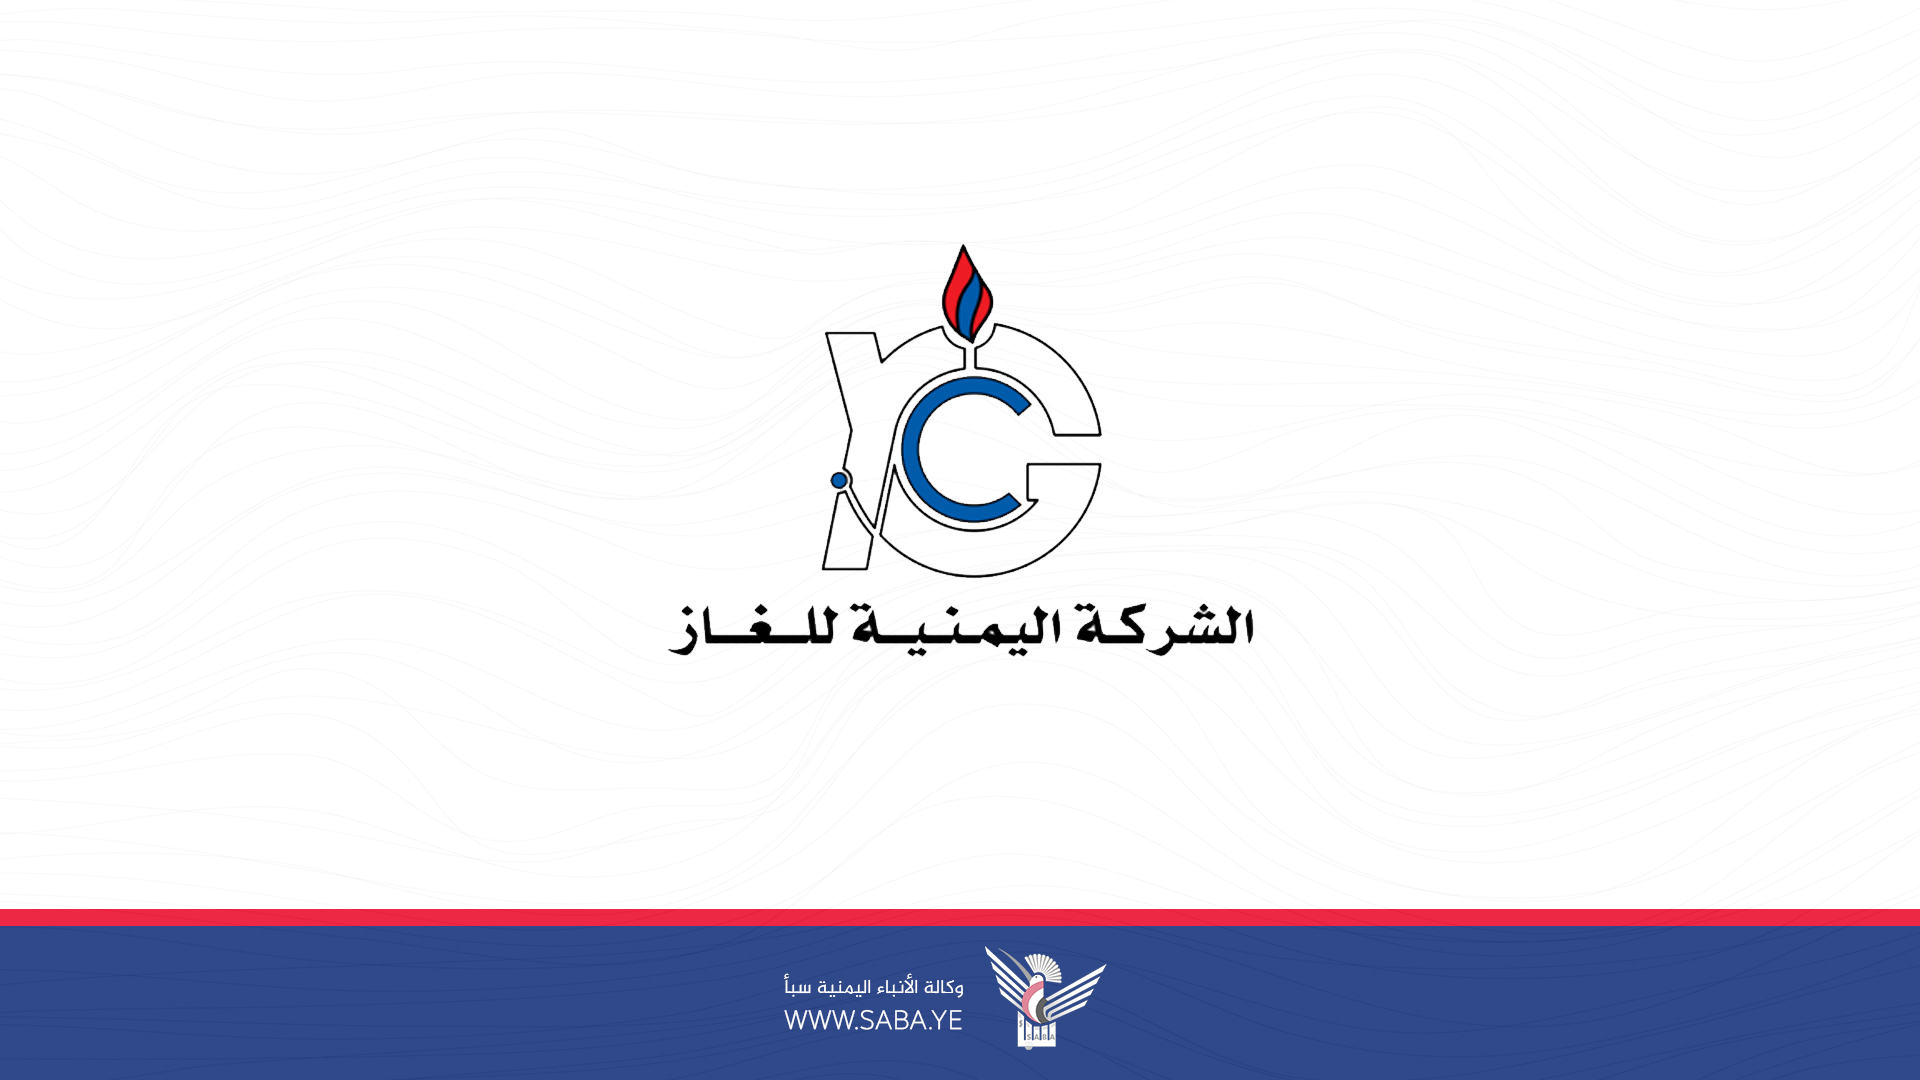 الشركة اليمنية للغاز تبدأ من يوم غد  الجمعة توزيع الغاز المستورد بسعر 326 ريال للتر الواحد